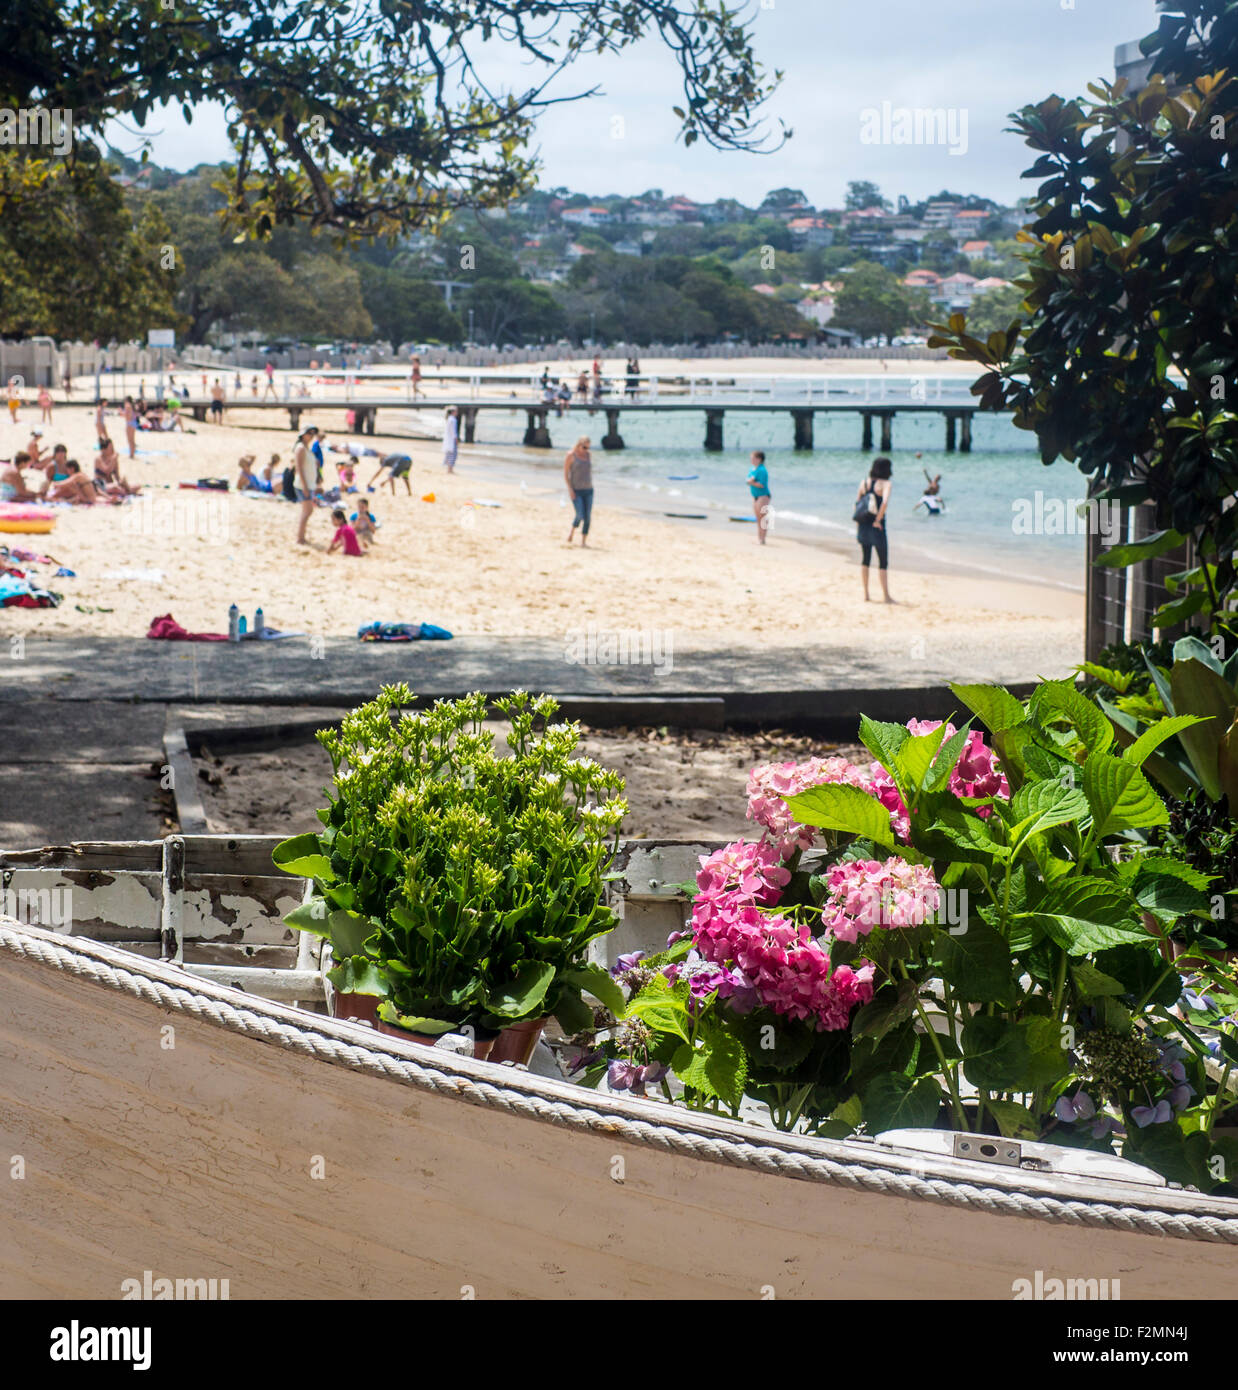 Balmoral Beach avec des fleurs en voile en premier plan Le Port de Sydney Sydney NSW Australie Nouvelle Galles du Sud Banque D'Images